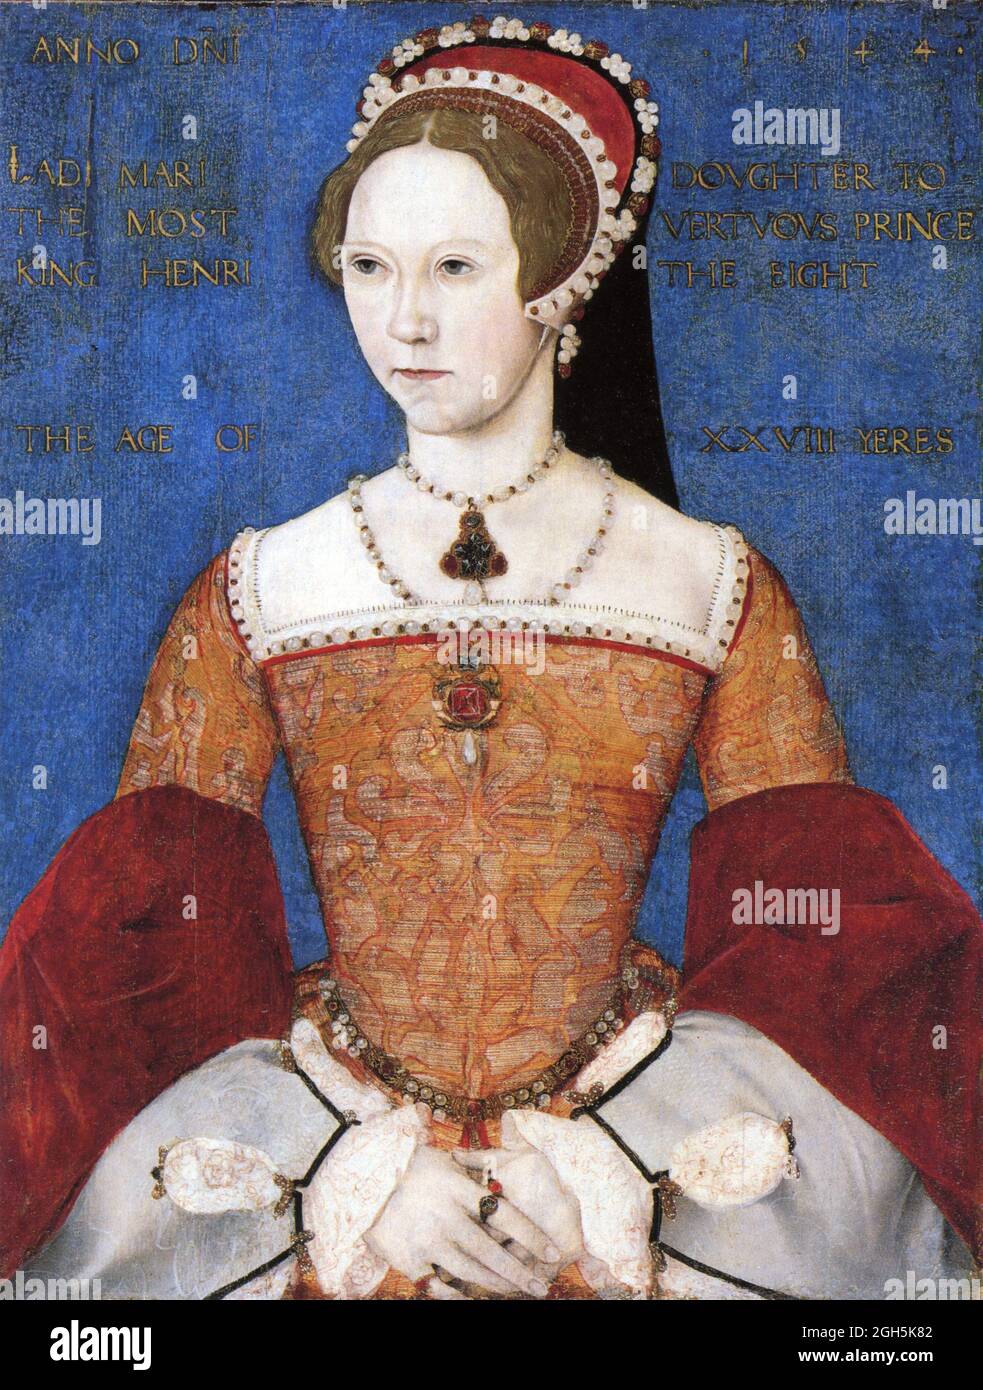 Un retrato de la reina María I (Bloody Mary), que fue la reina de Inglaterra desde 1553 hasta 1558 Foto de stock